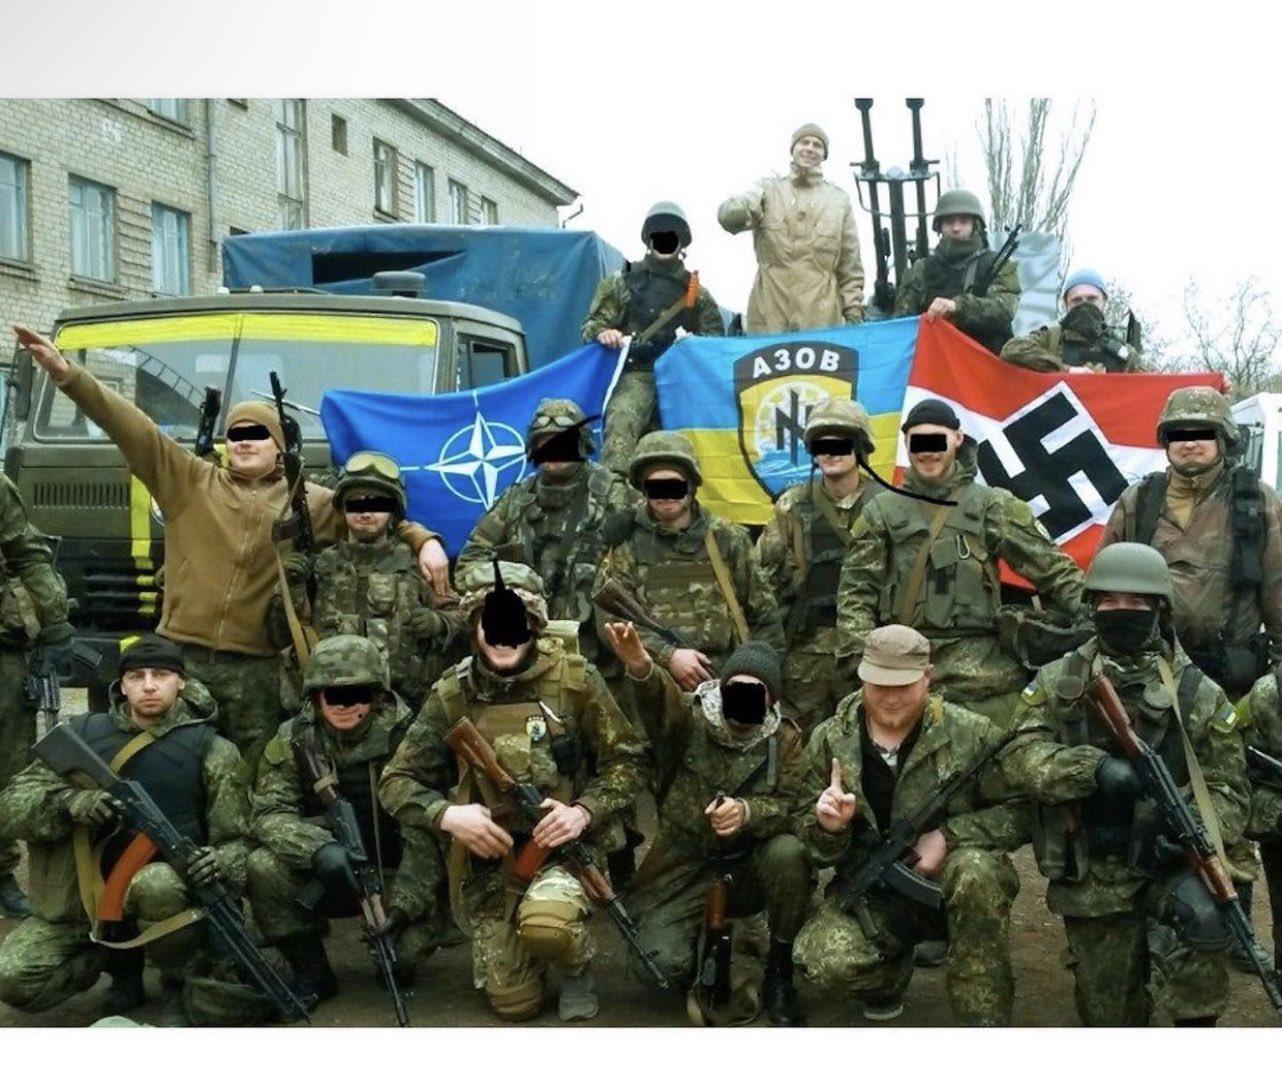 乌克兰纳粹主义图片